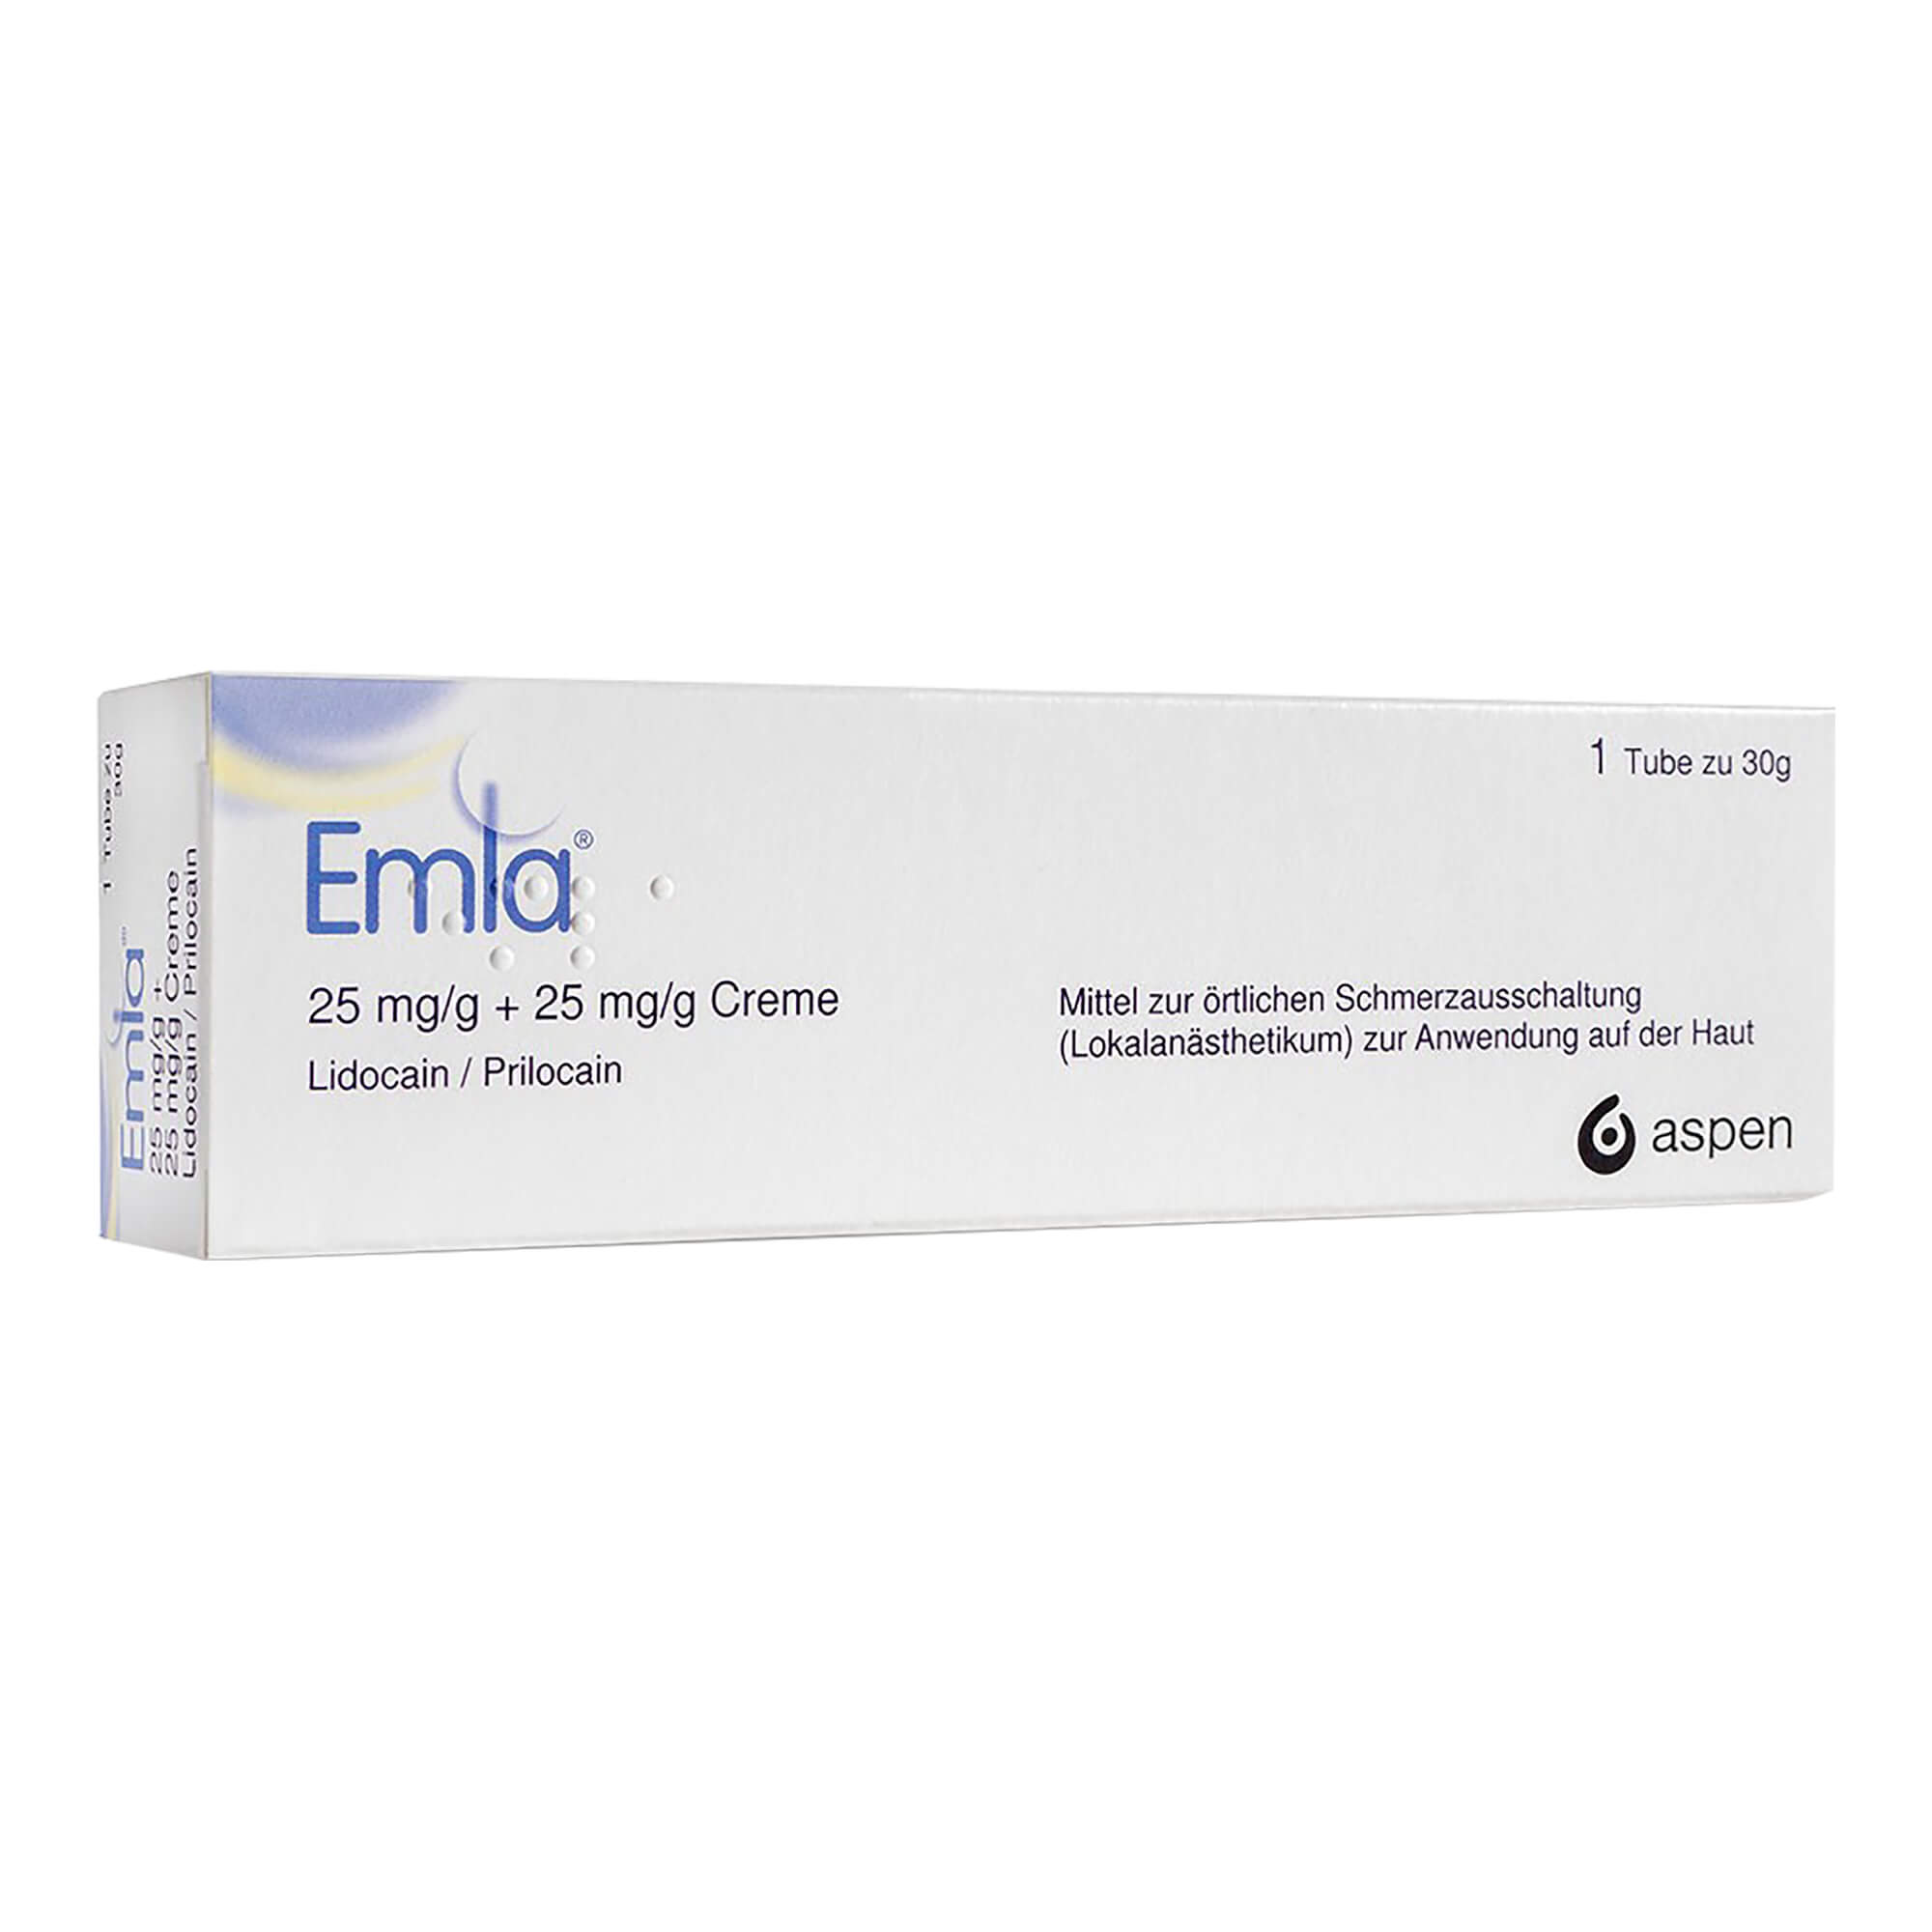 Emla 25 mg/g + 25 mg/g Creme